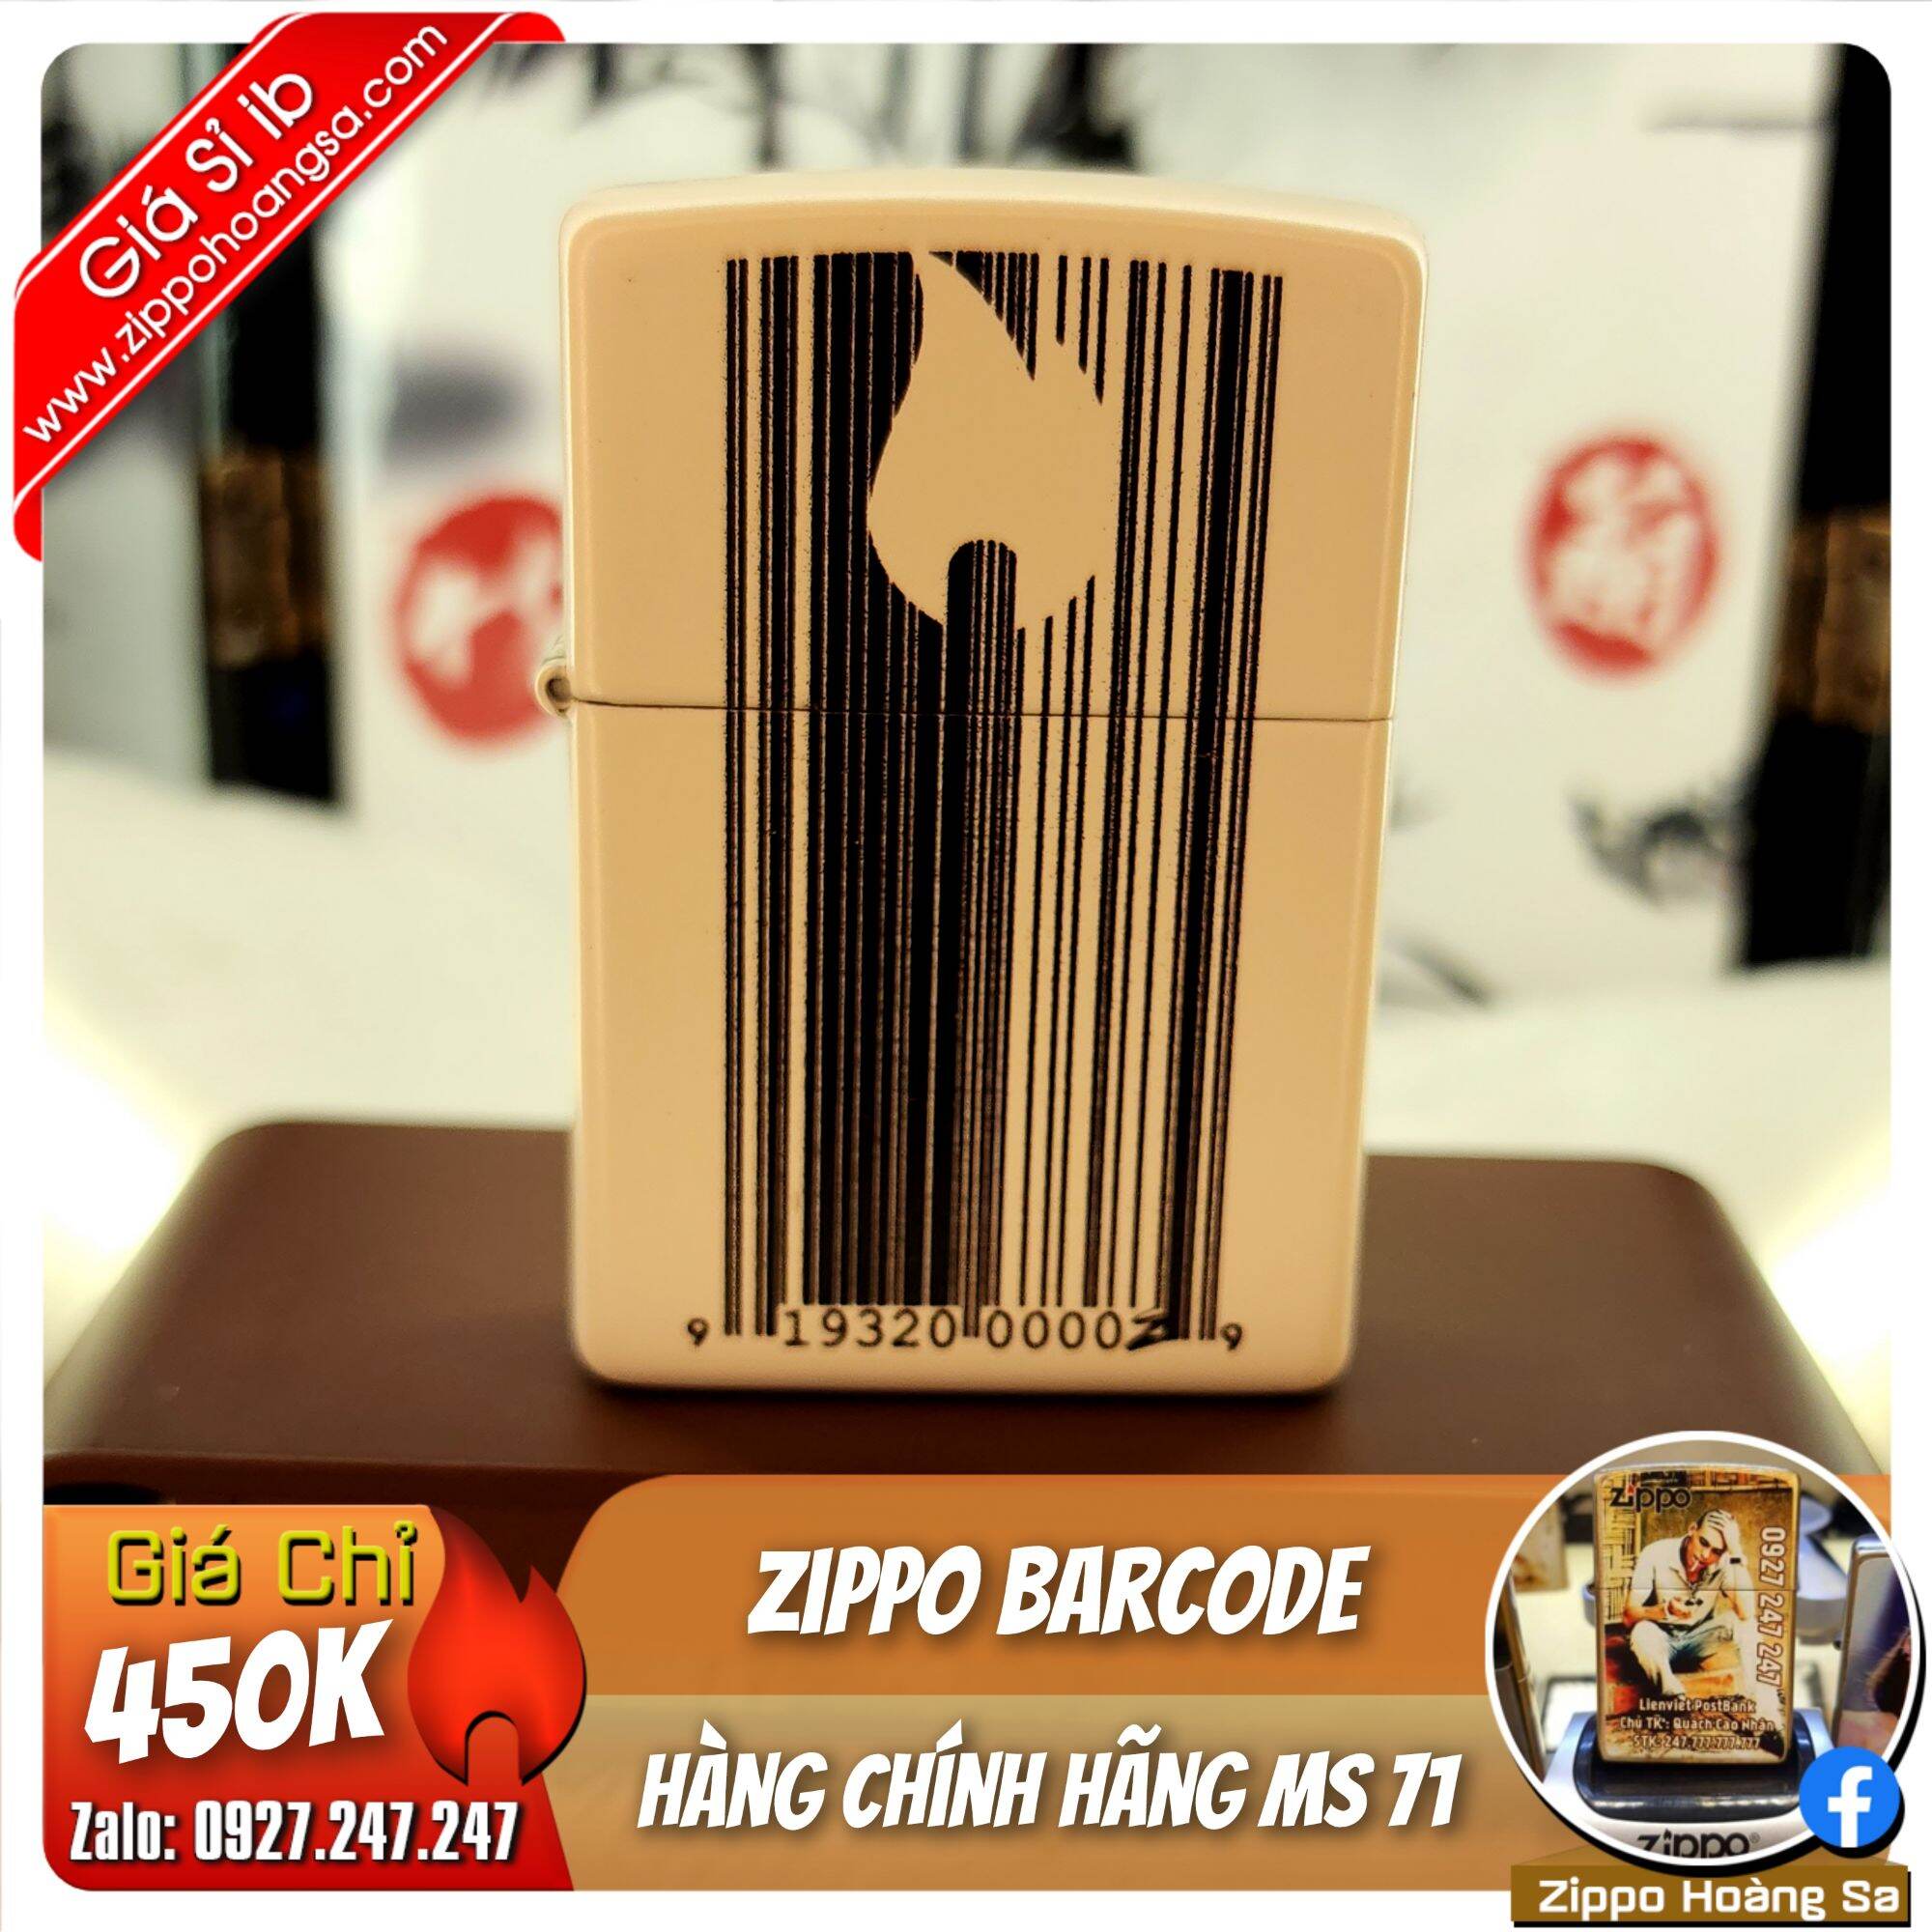 Zippo barcode - Bật lửa Zippo chính hãng MS 71